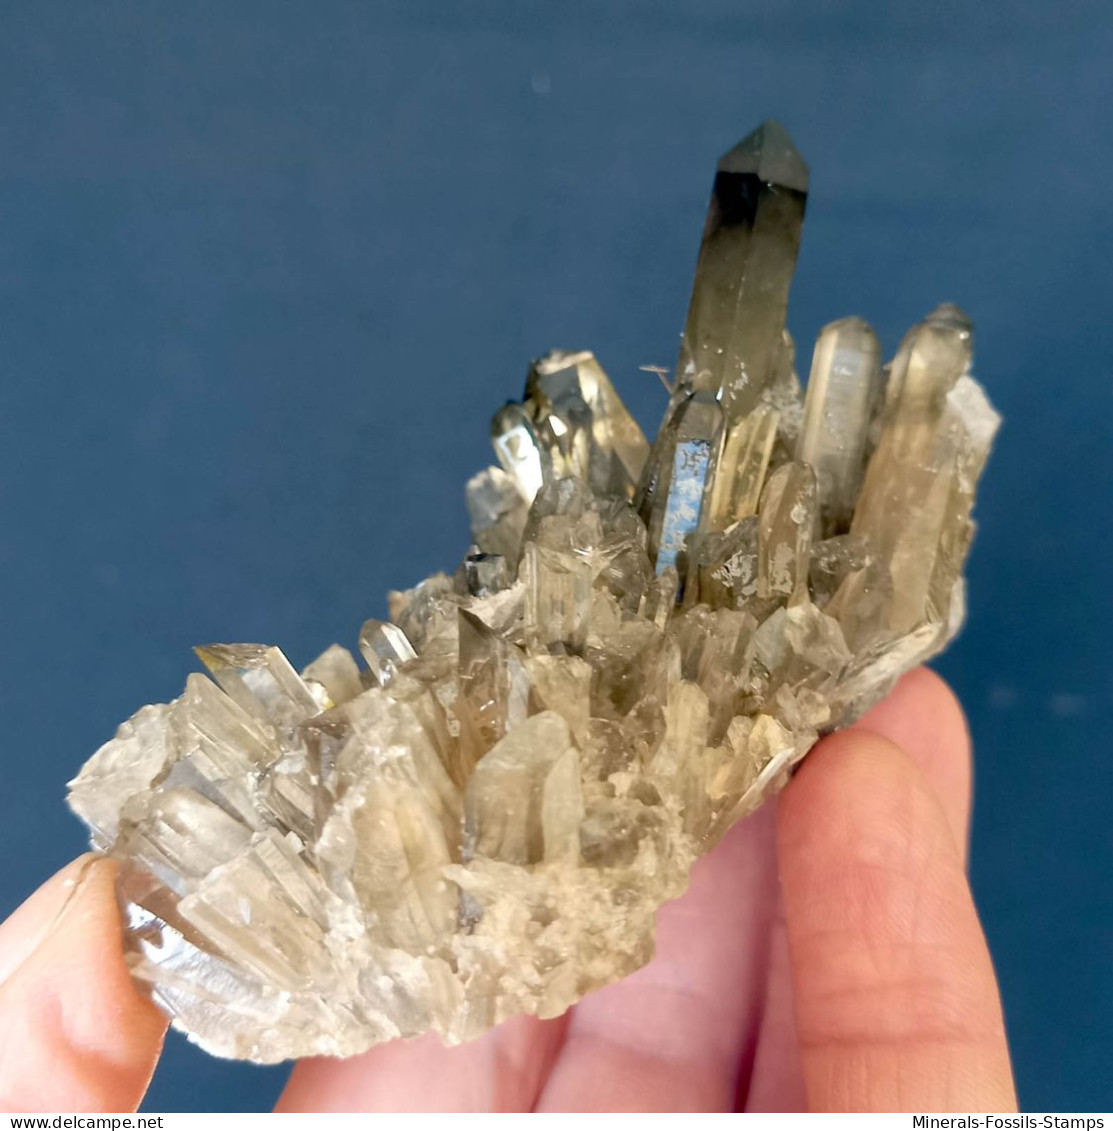 #07 – SCHÖNE MORIONE QUARZ Kristalle (Kara-Oba, Moiynkum, Jambyl, Kasachstan) - Mineralien